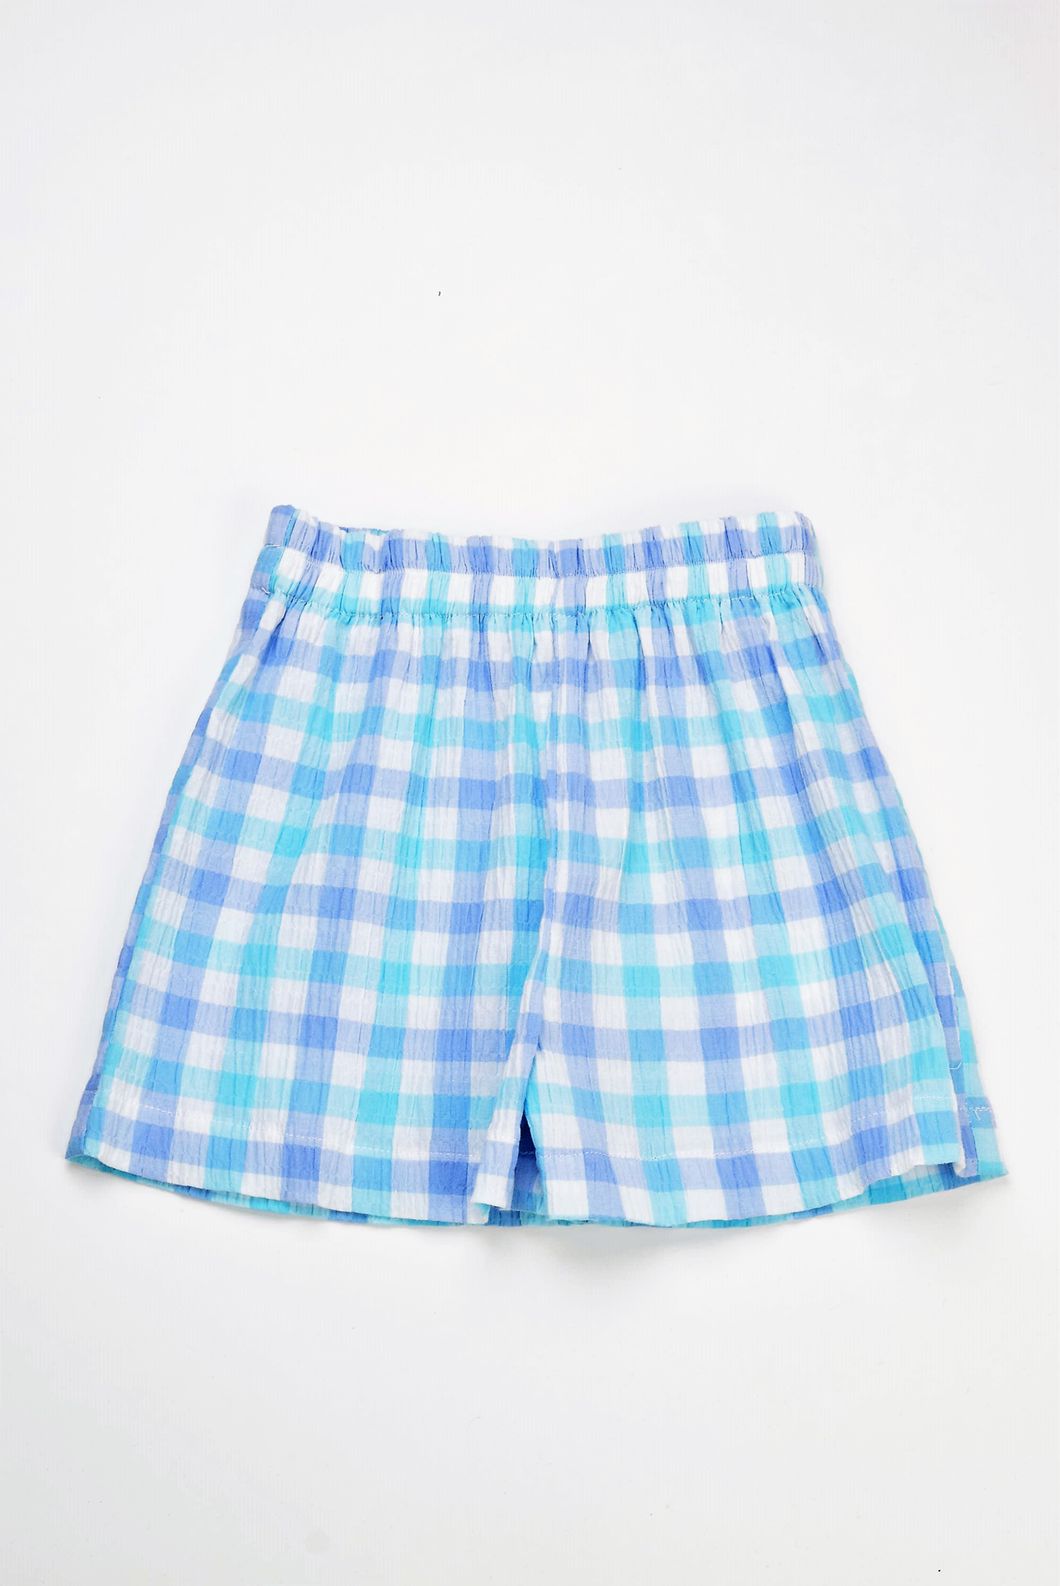 Aqua/Blue Check Shorts